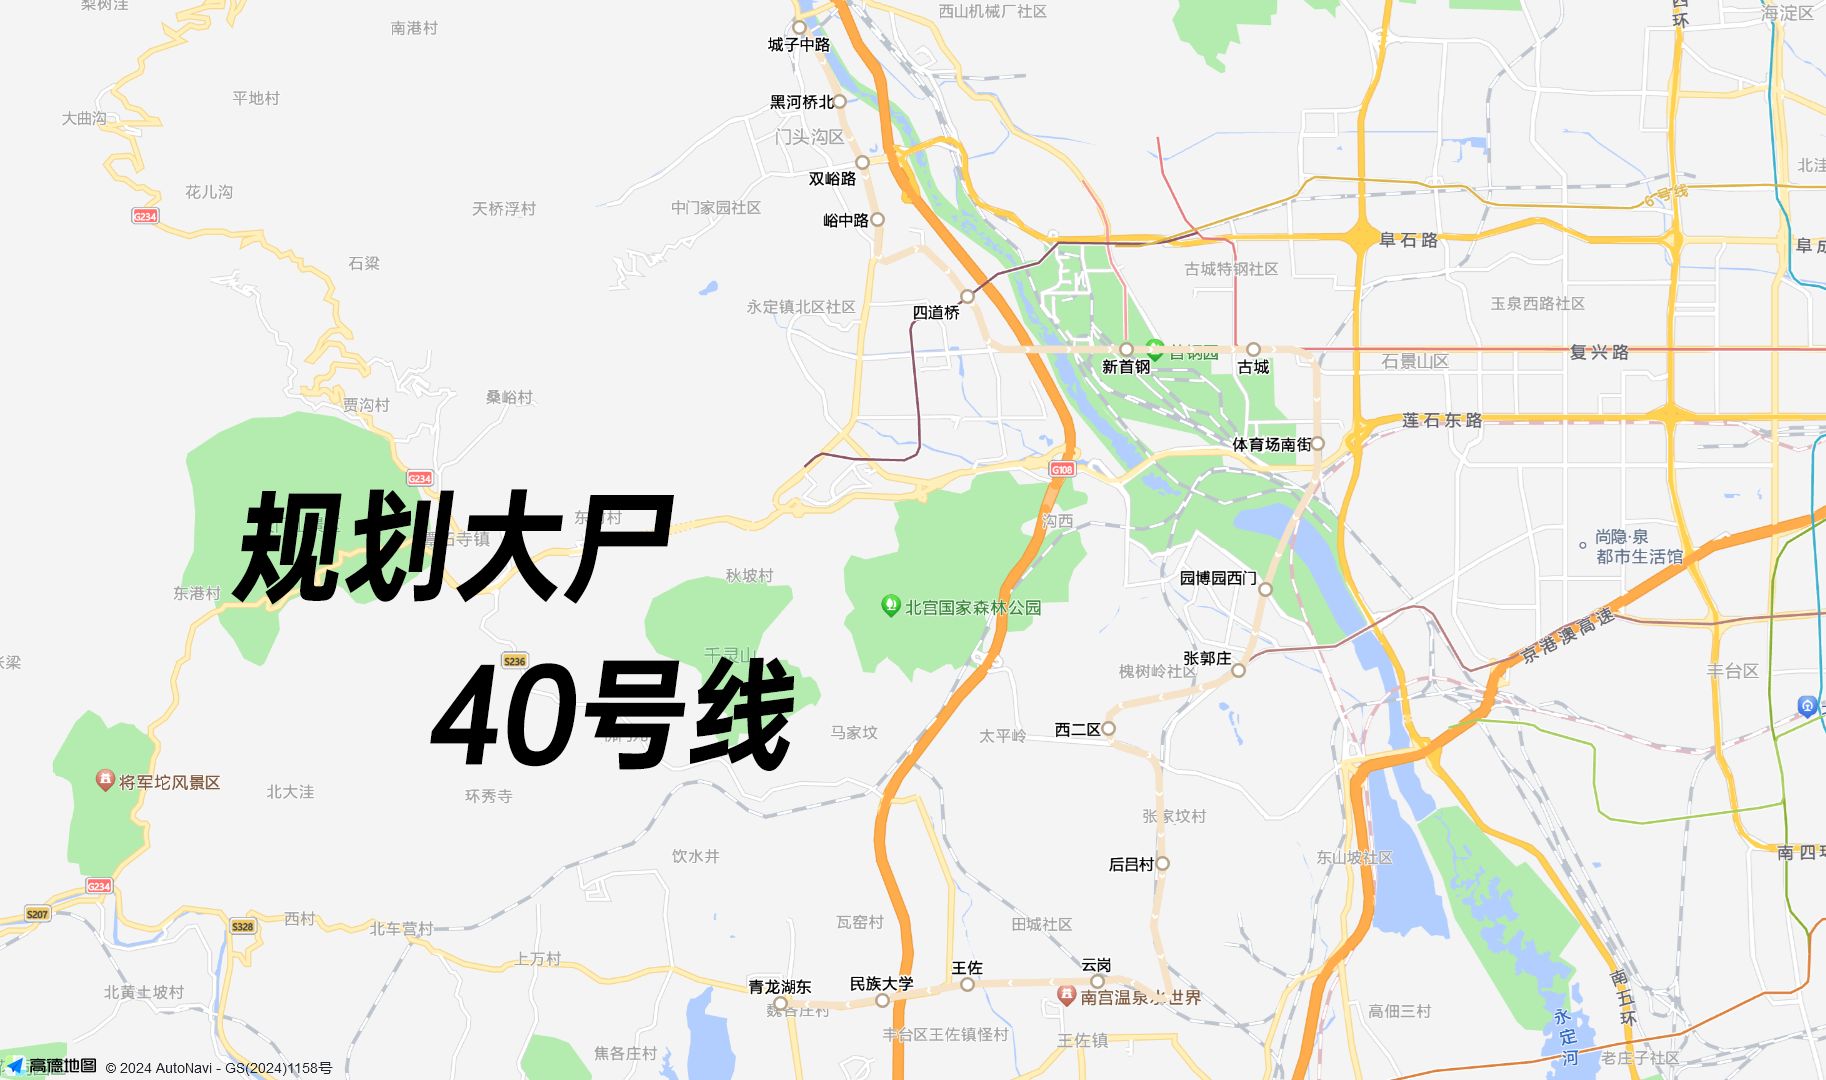 【地铁规划大尸】北京地铁40号线 城子中路